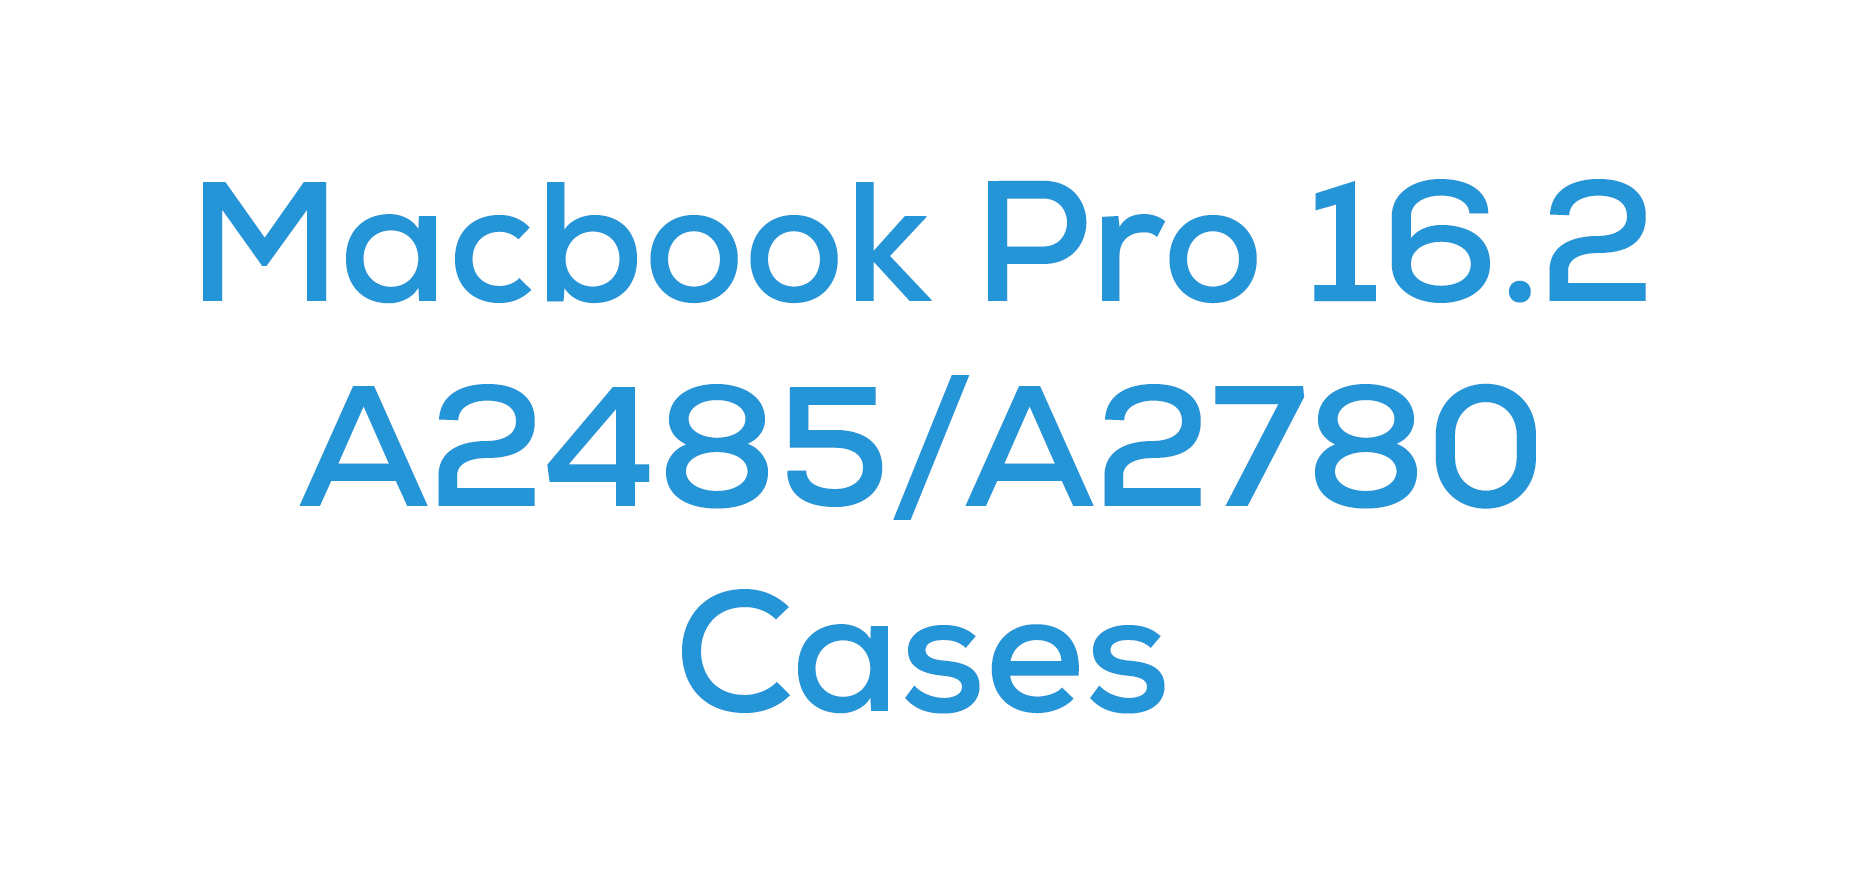 Macbook Pro 16.2 (A2485/A2780)